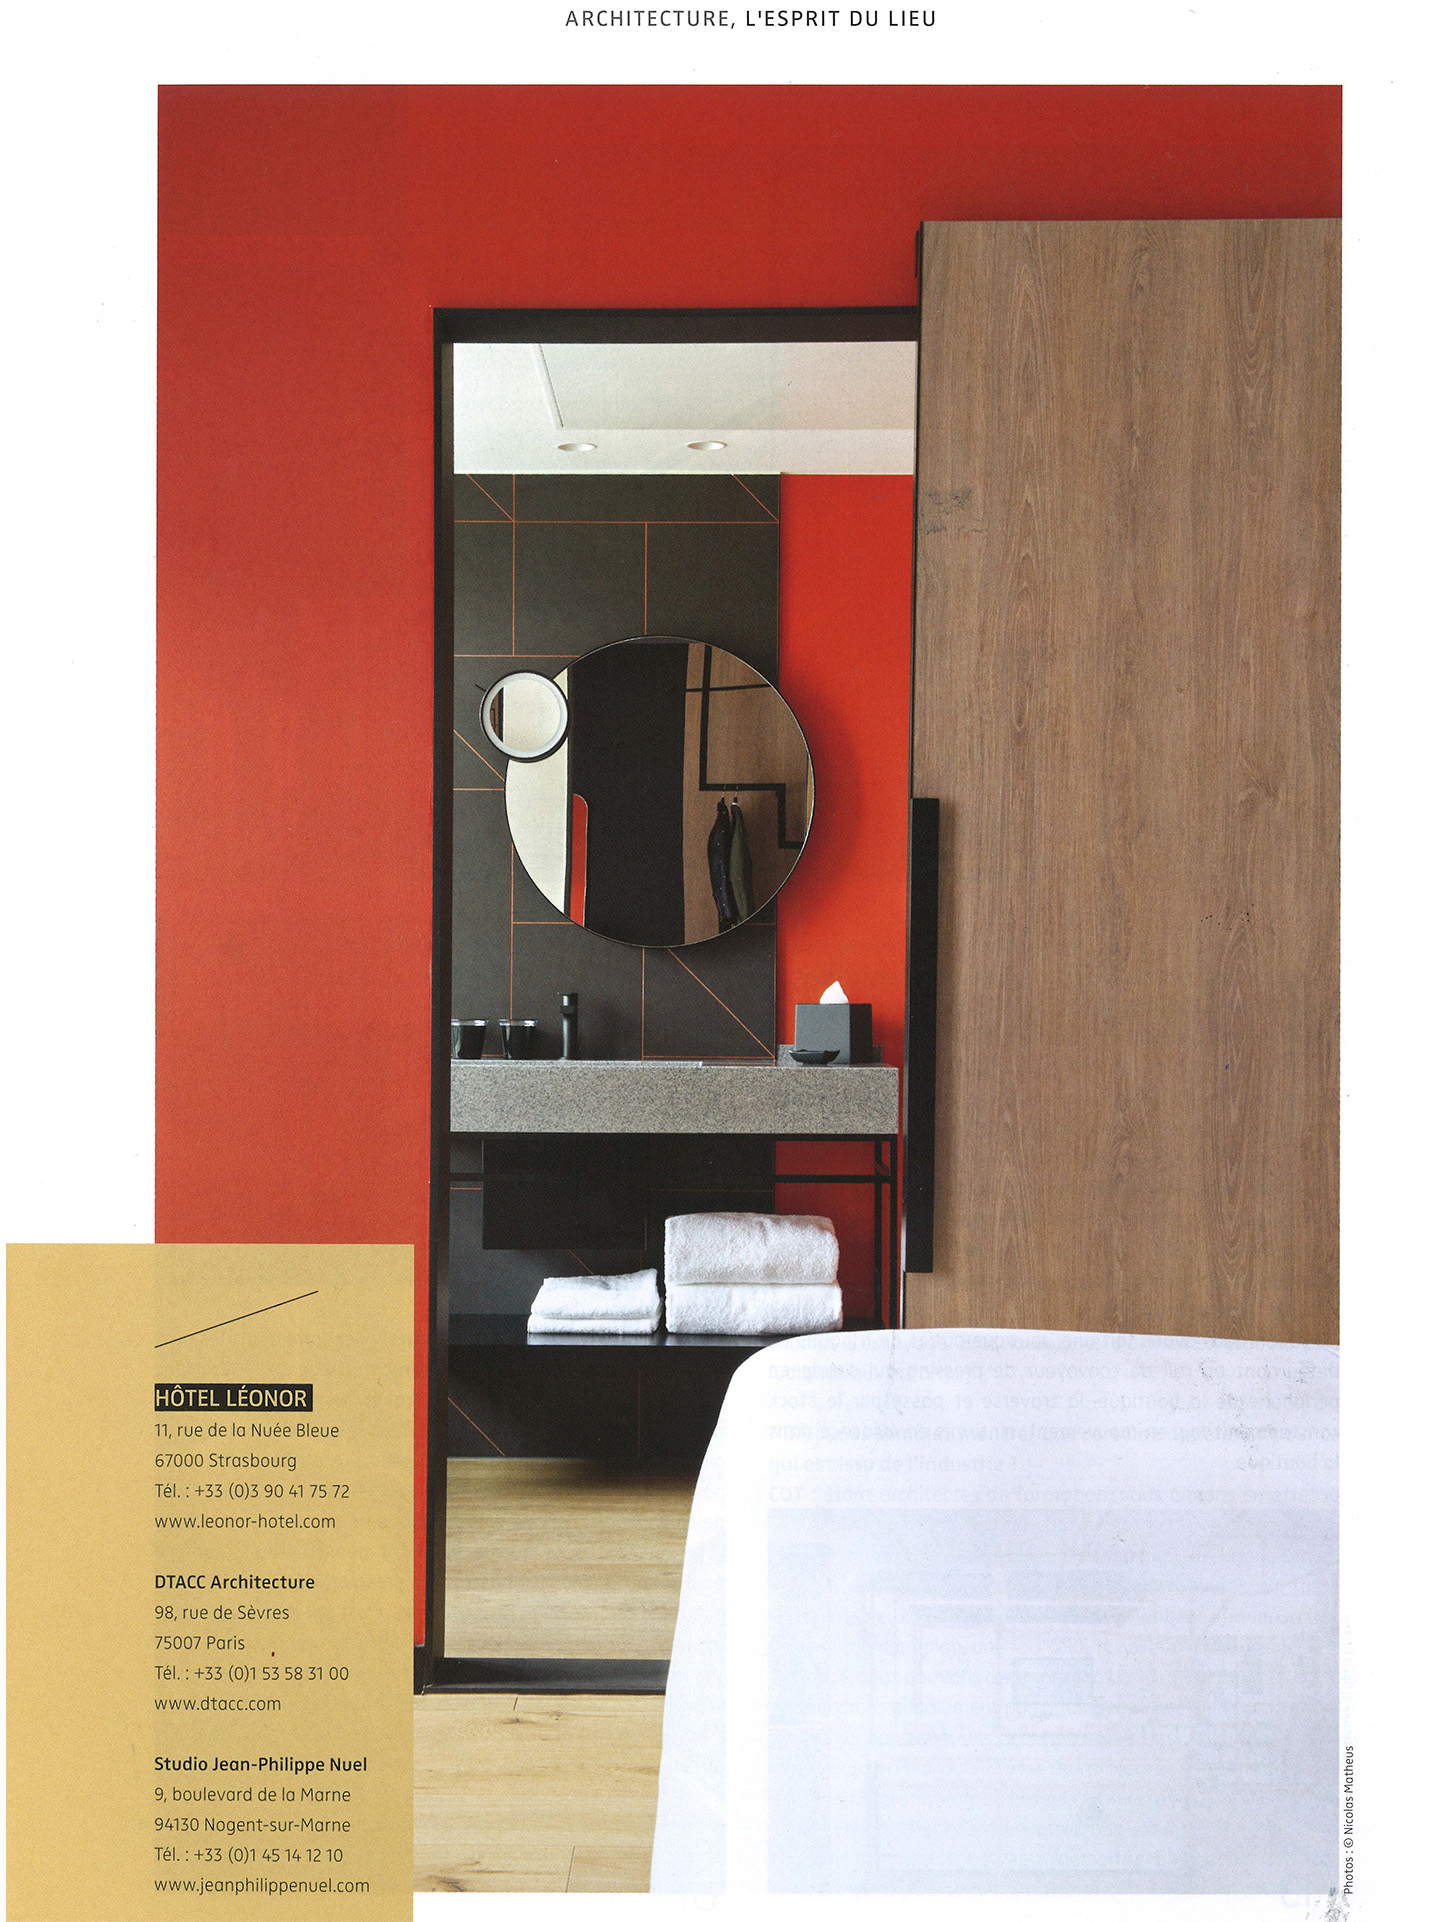 Article de NDA Magazine sur la réhabilitation d'un palais de justice à Strasbourg en un hôtel de luxe par le studio jean-philippe nuel